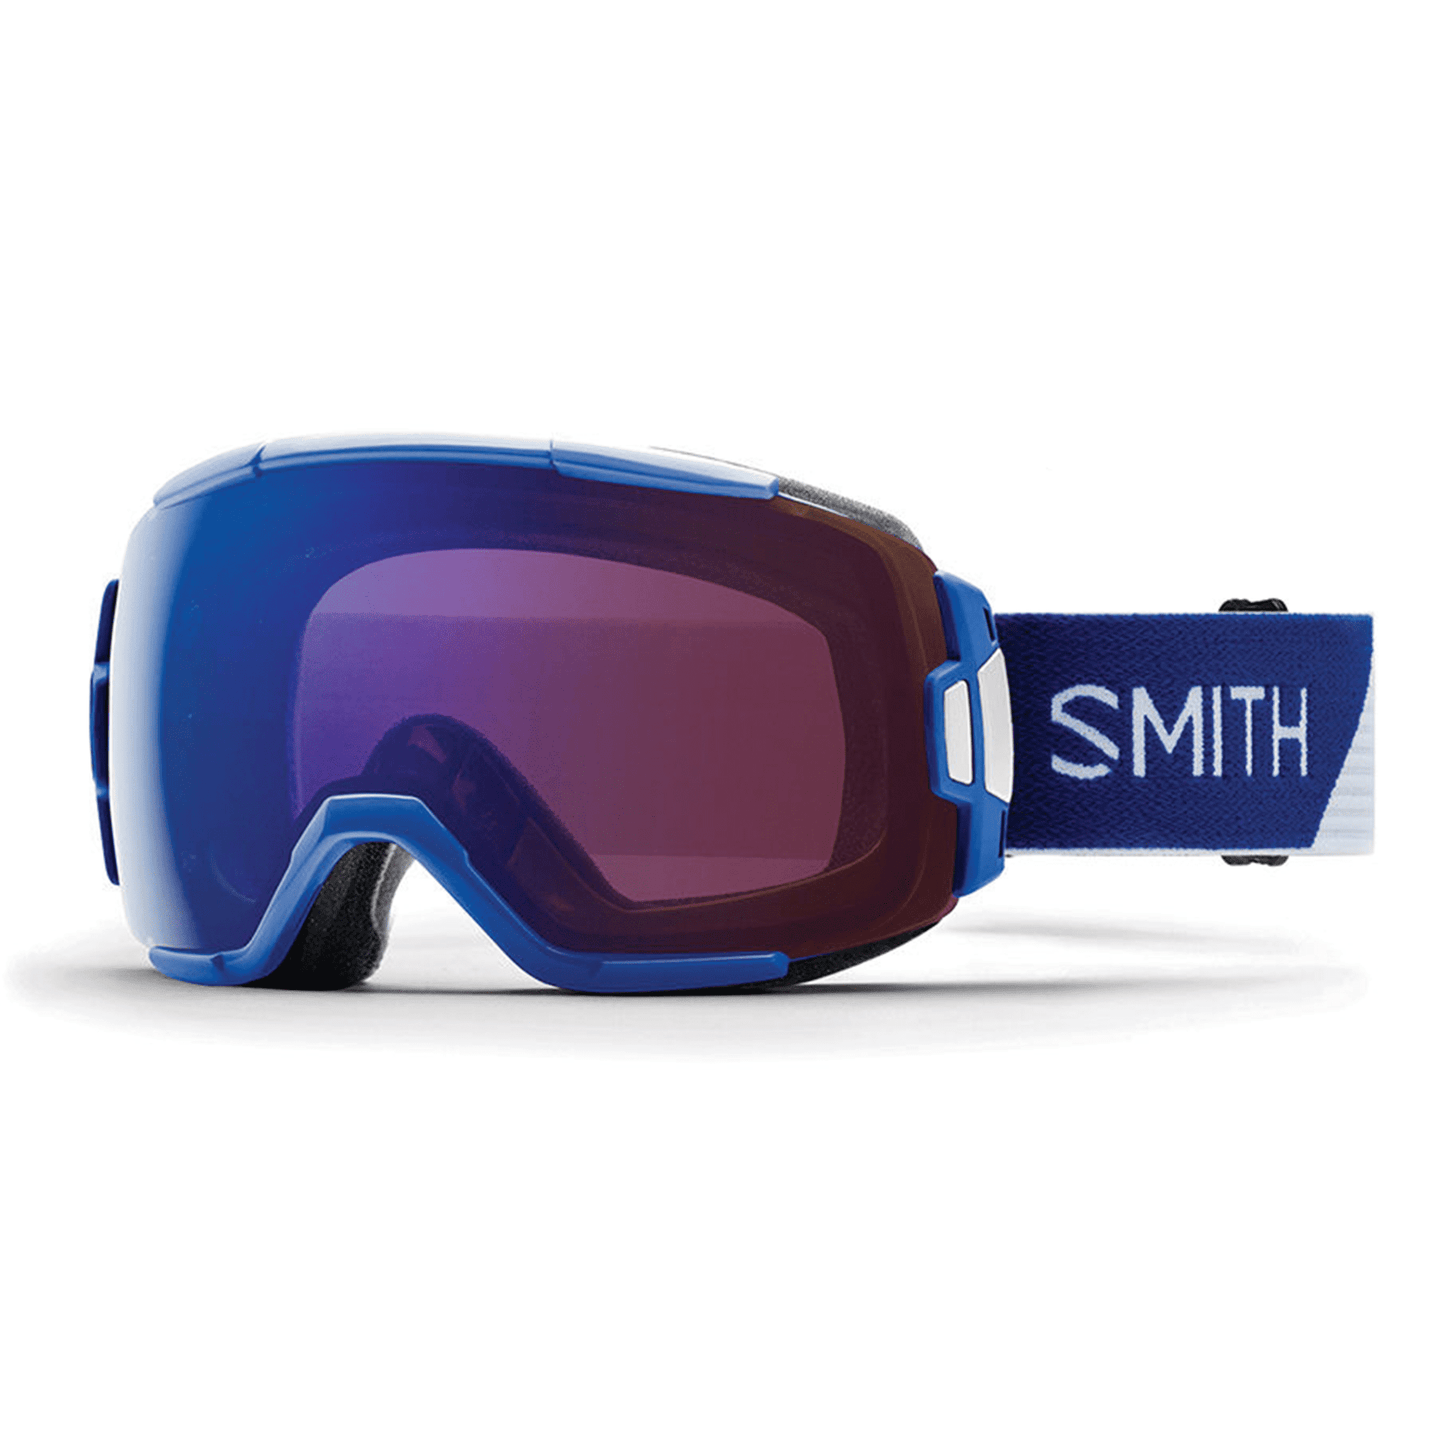 Smith Vice Goggles - Klein Blue Split